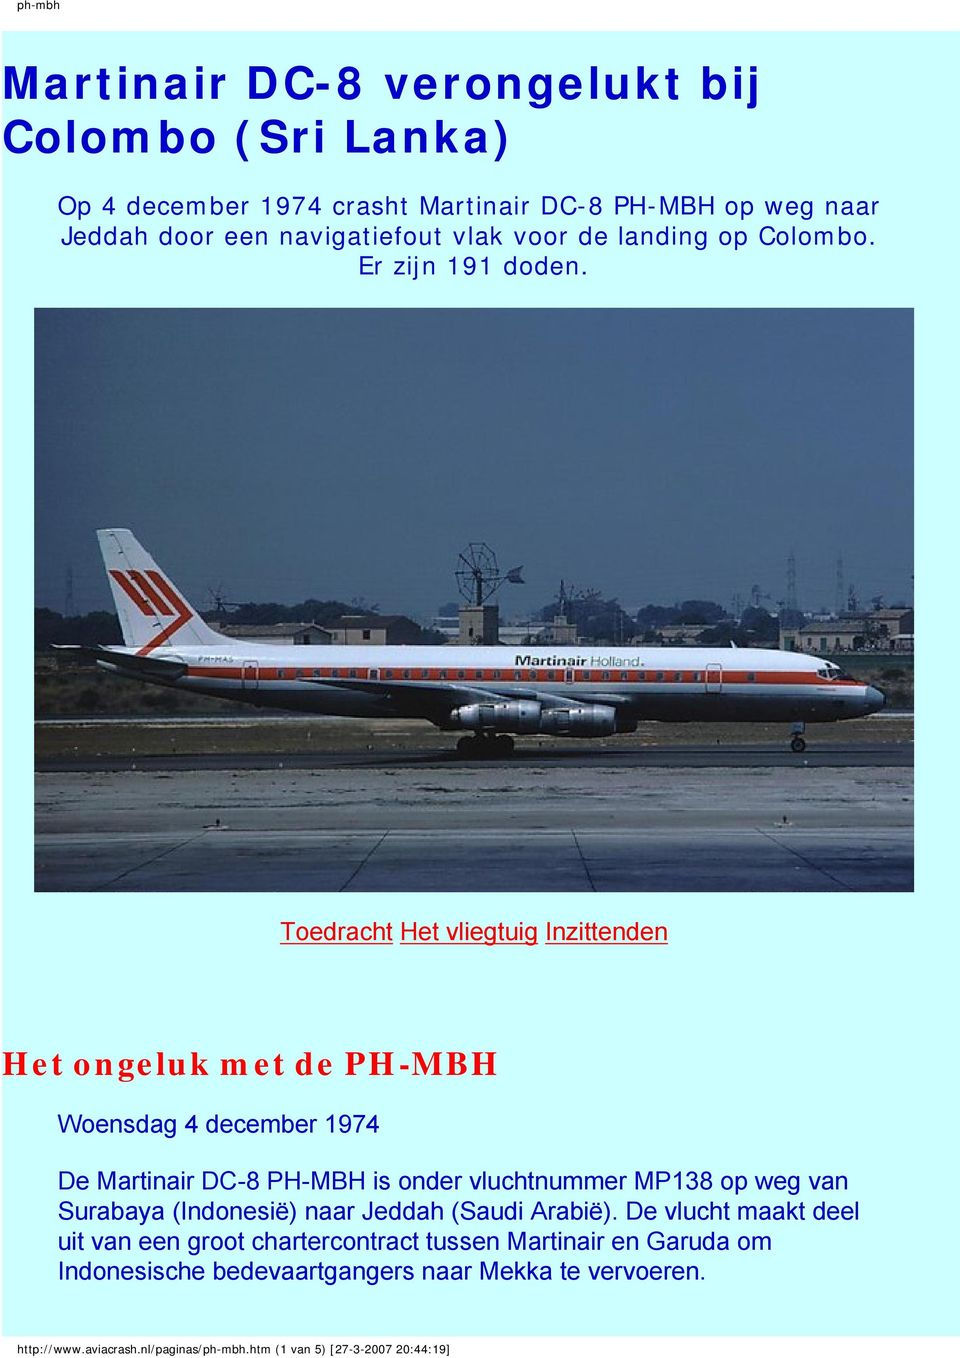 Toedracht Het vliegtuig Inzittenden Het ongeluk met de PH-MBH Woensdag 4 december 1974 De Martinair DC-8 PH-MBH is onder vluchtnummer MP138 op weg van